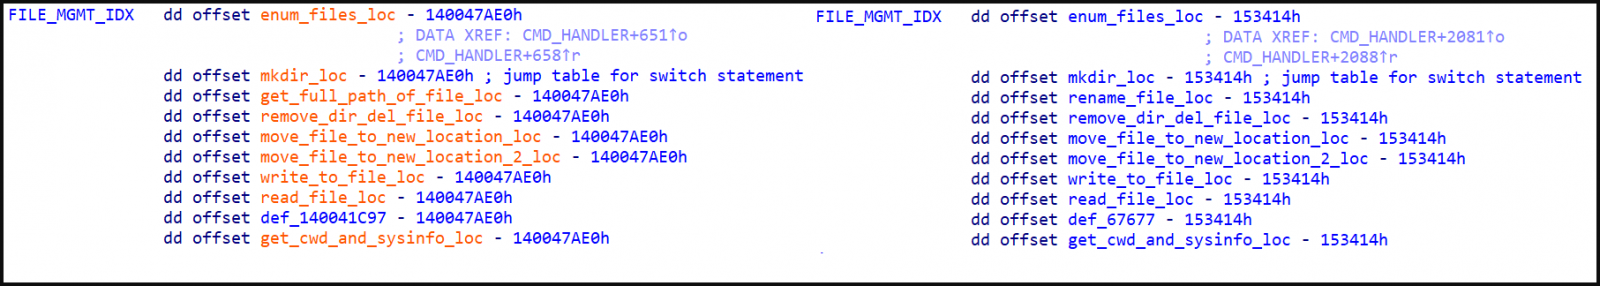 Capacités de gestion de fichiers, EXE à gauche, ELF à droite